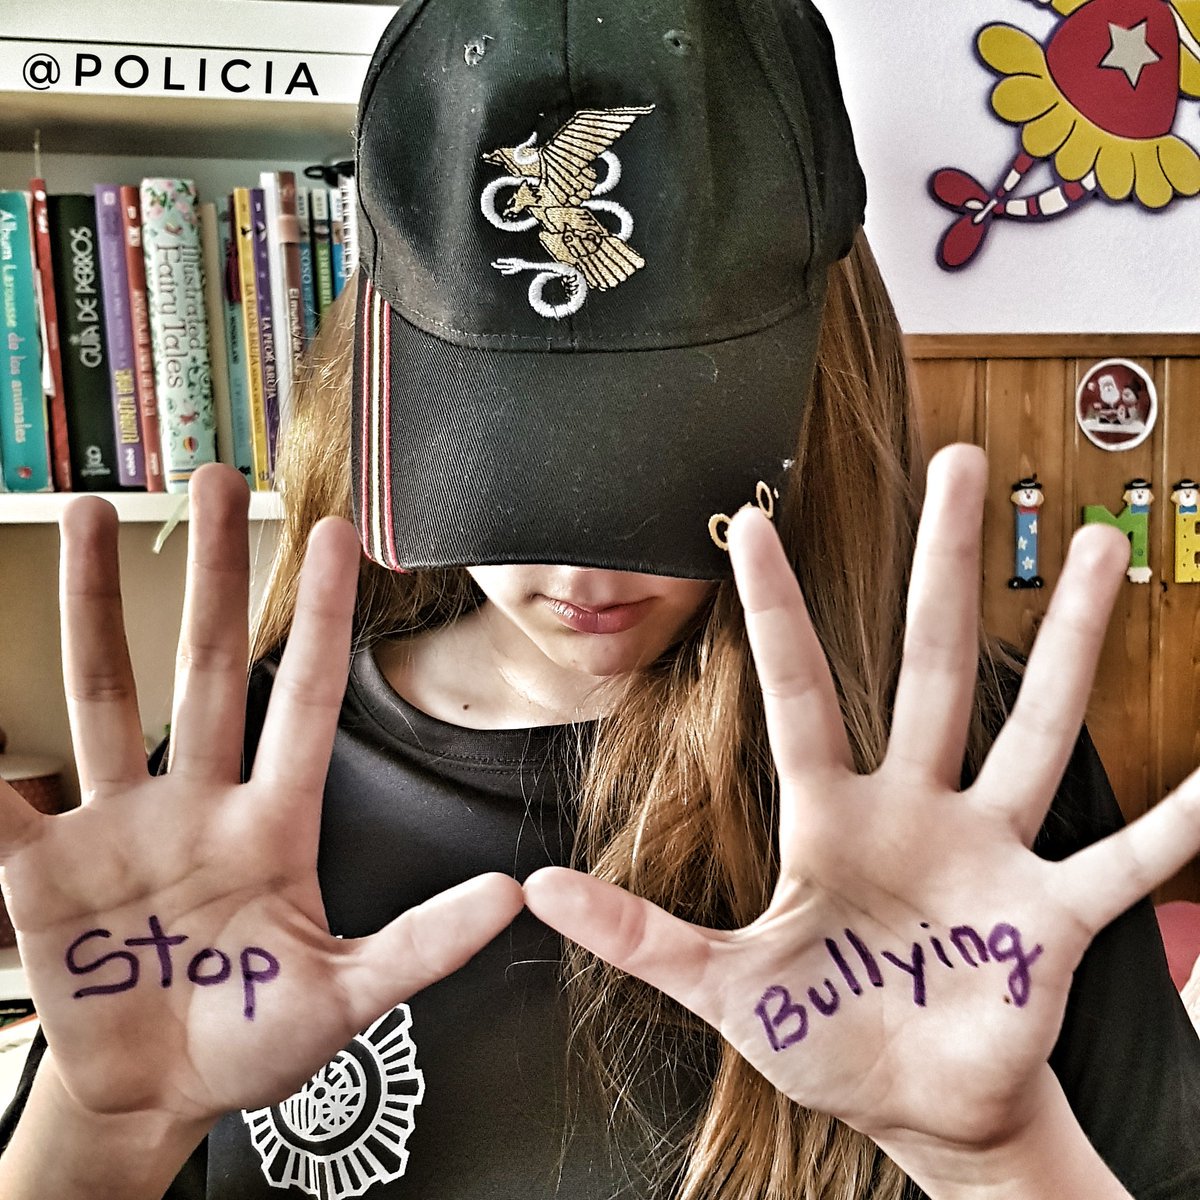 🔹 Eres valiente 💪 
🔹 No estás solo/a 
🔹 Ante el #bullying, 👉 no te calles

Hacer sufrir a los demás es de COBARDES

#NoalAcosoEscolar
Denuncia el #bullying #StopBullying